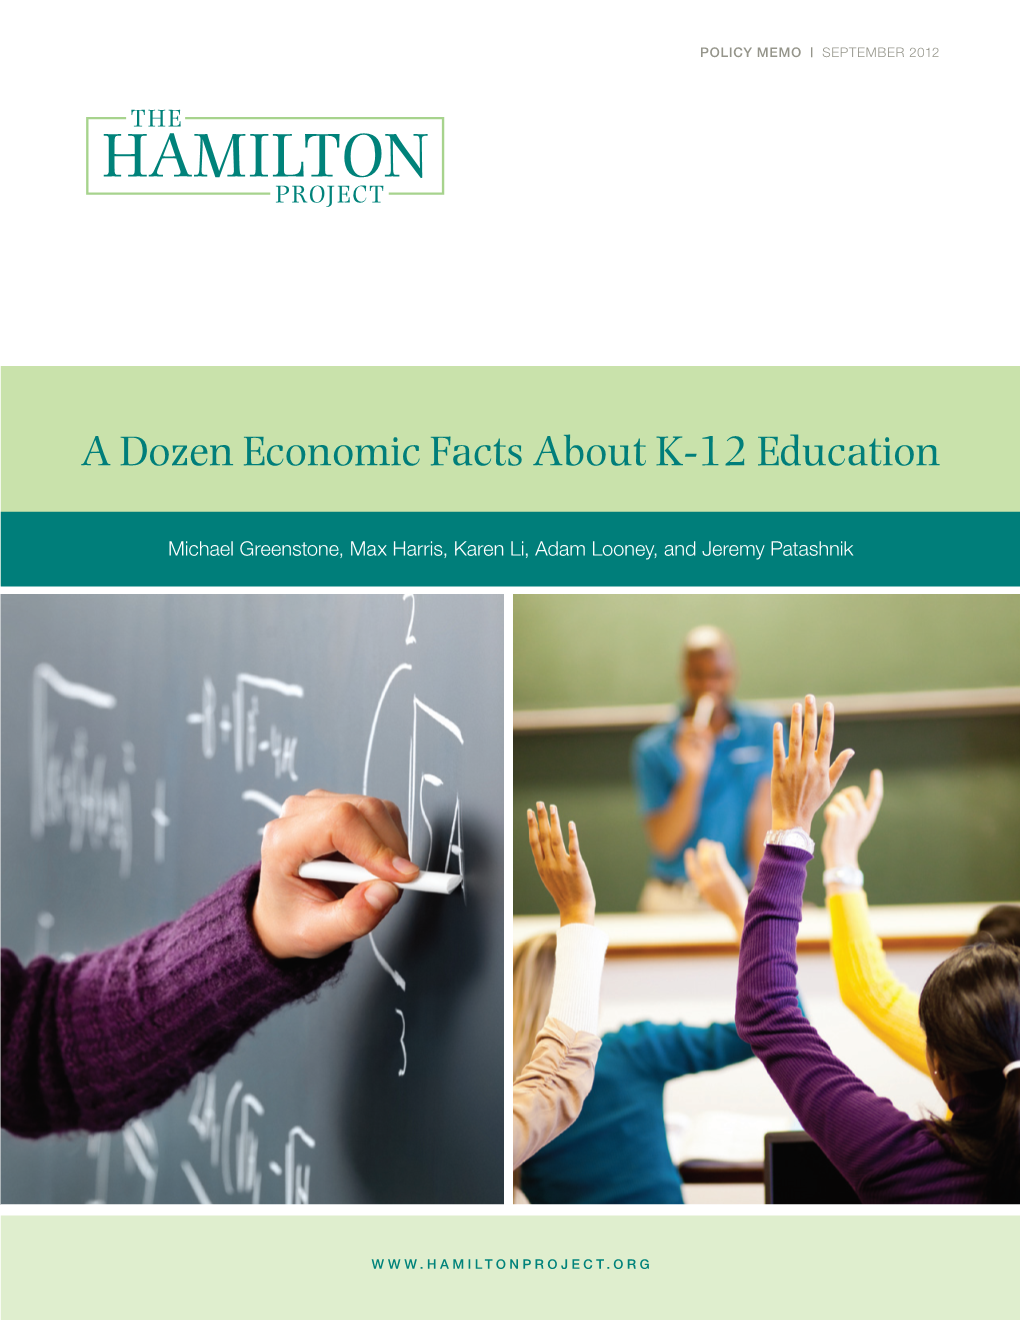 A Dozen Economic Facts About K-12 Education